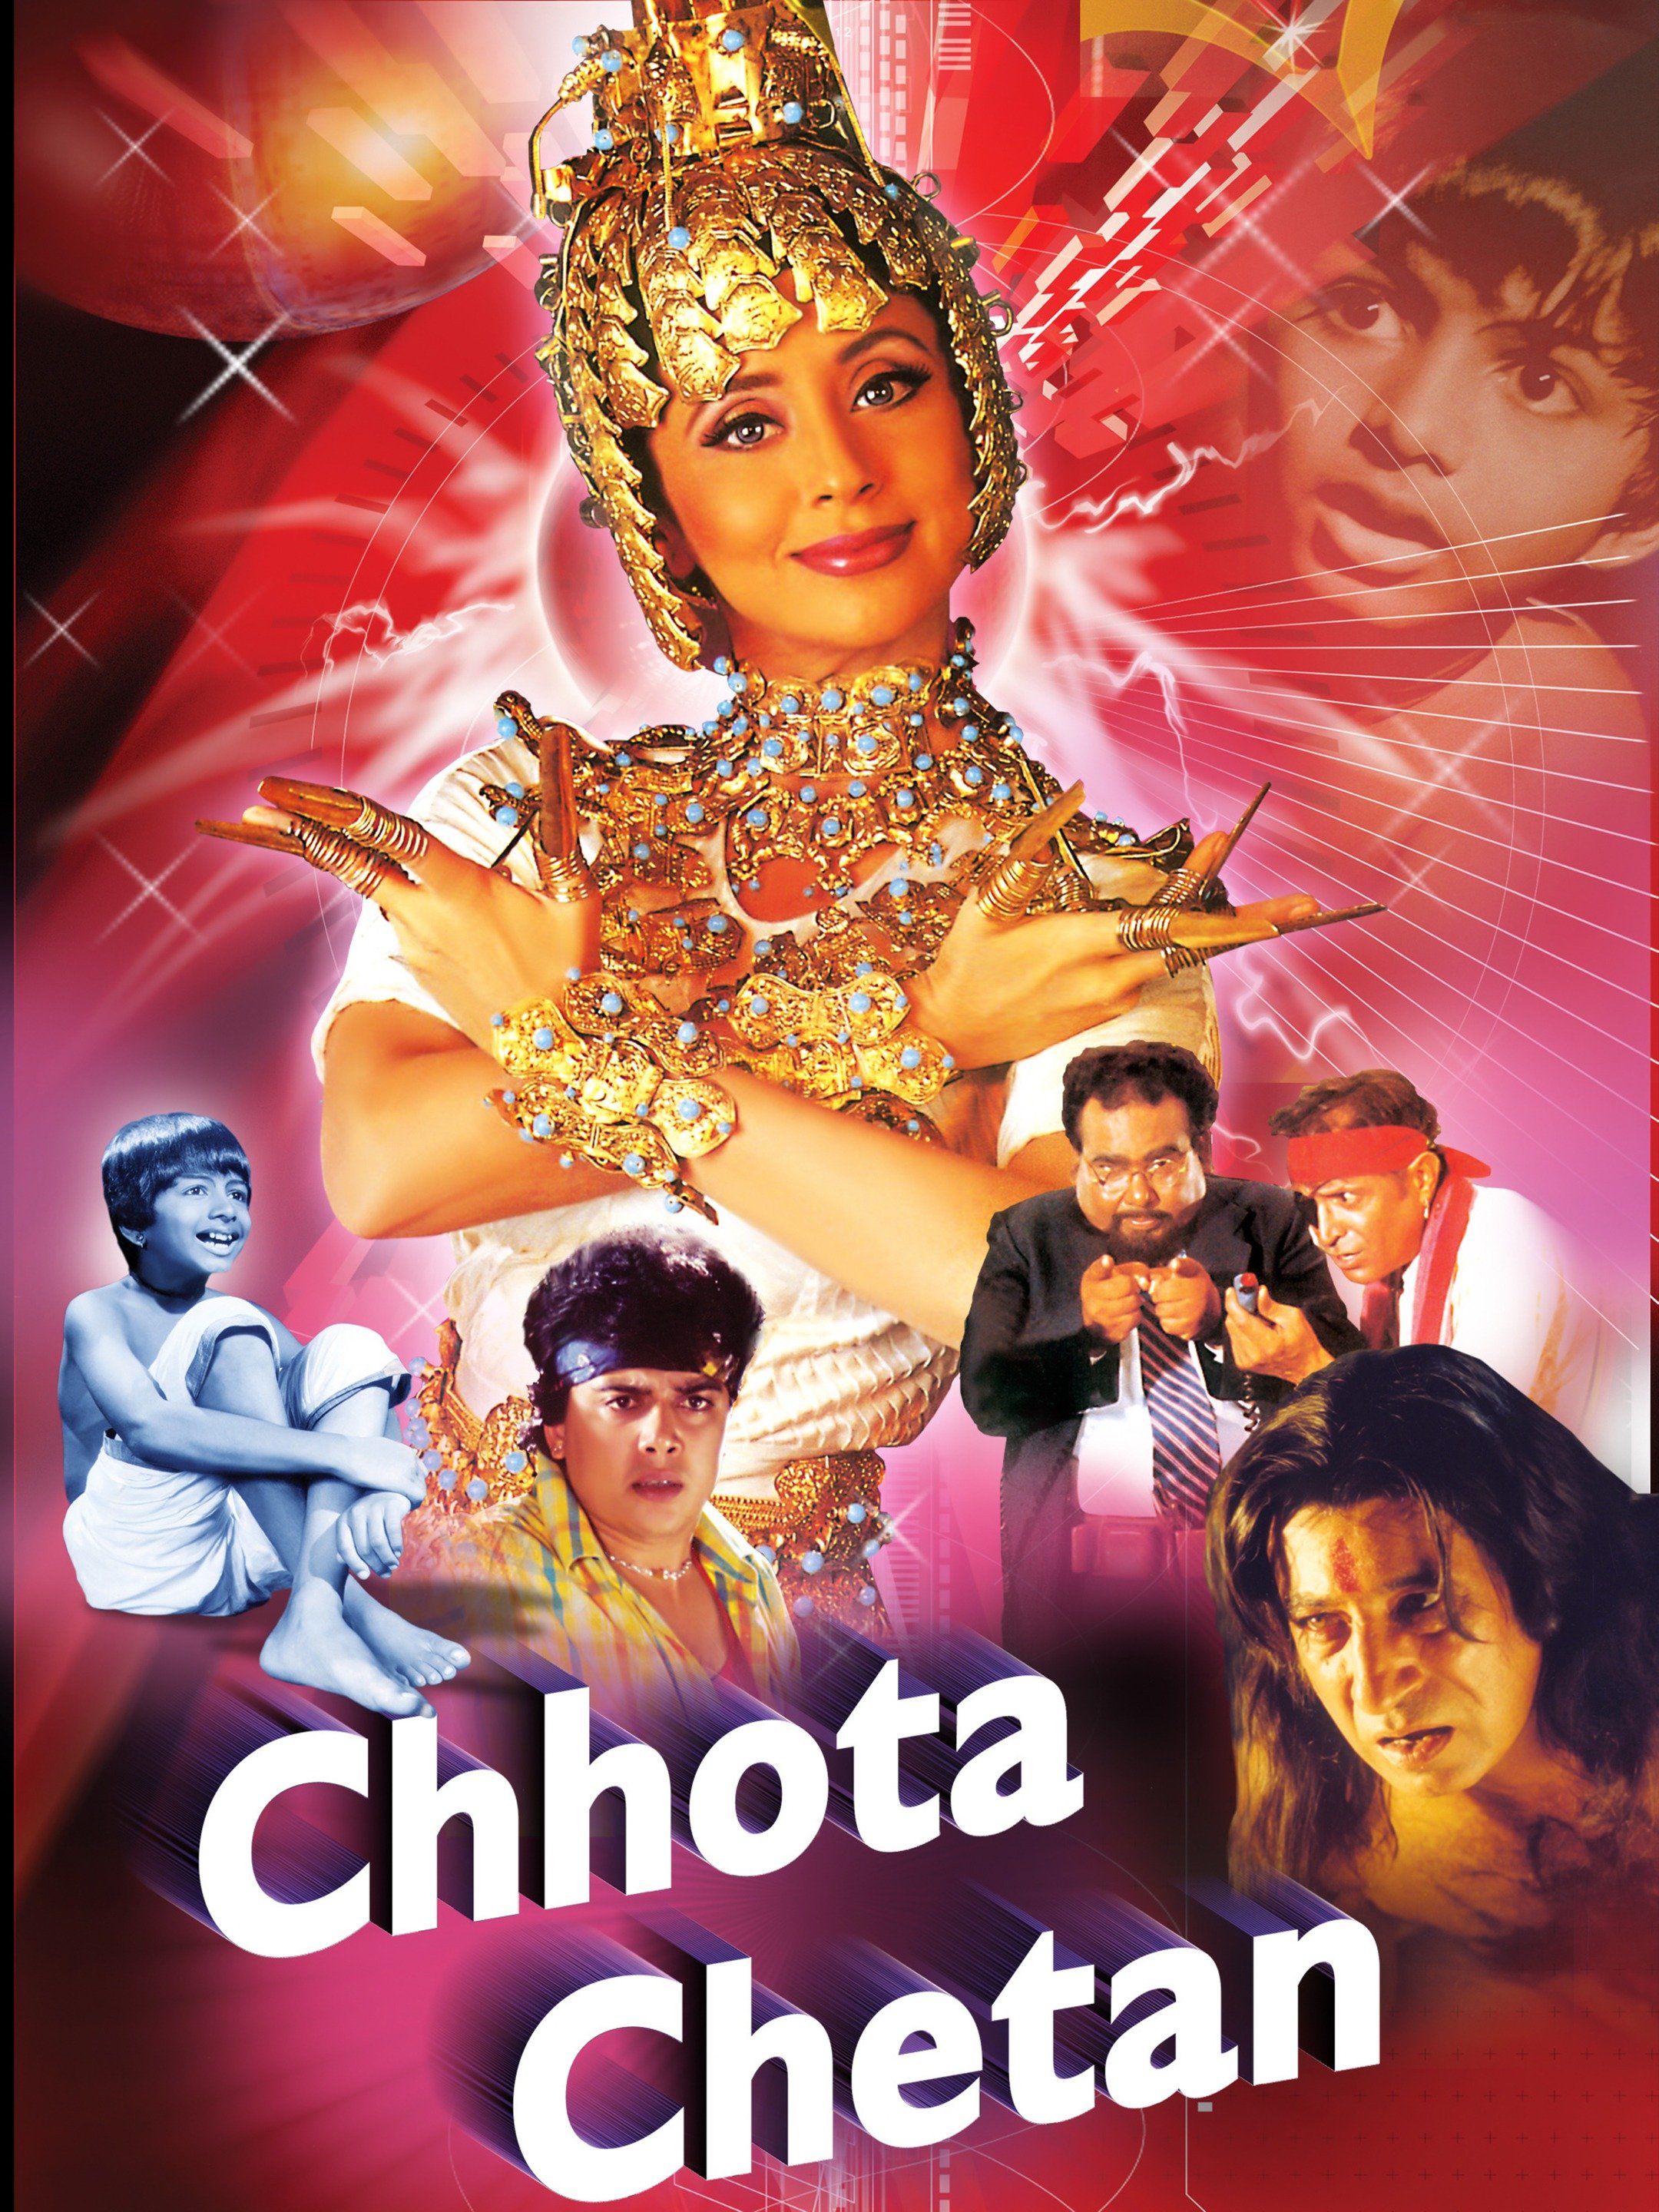 Chota chetan movie